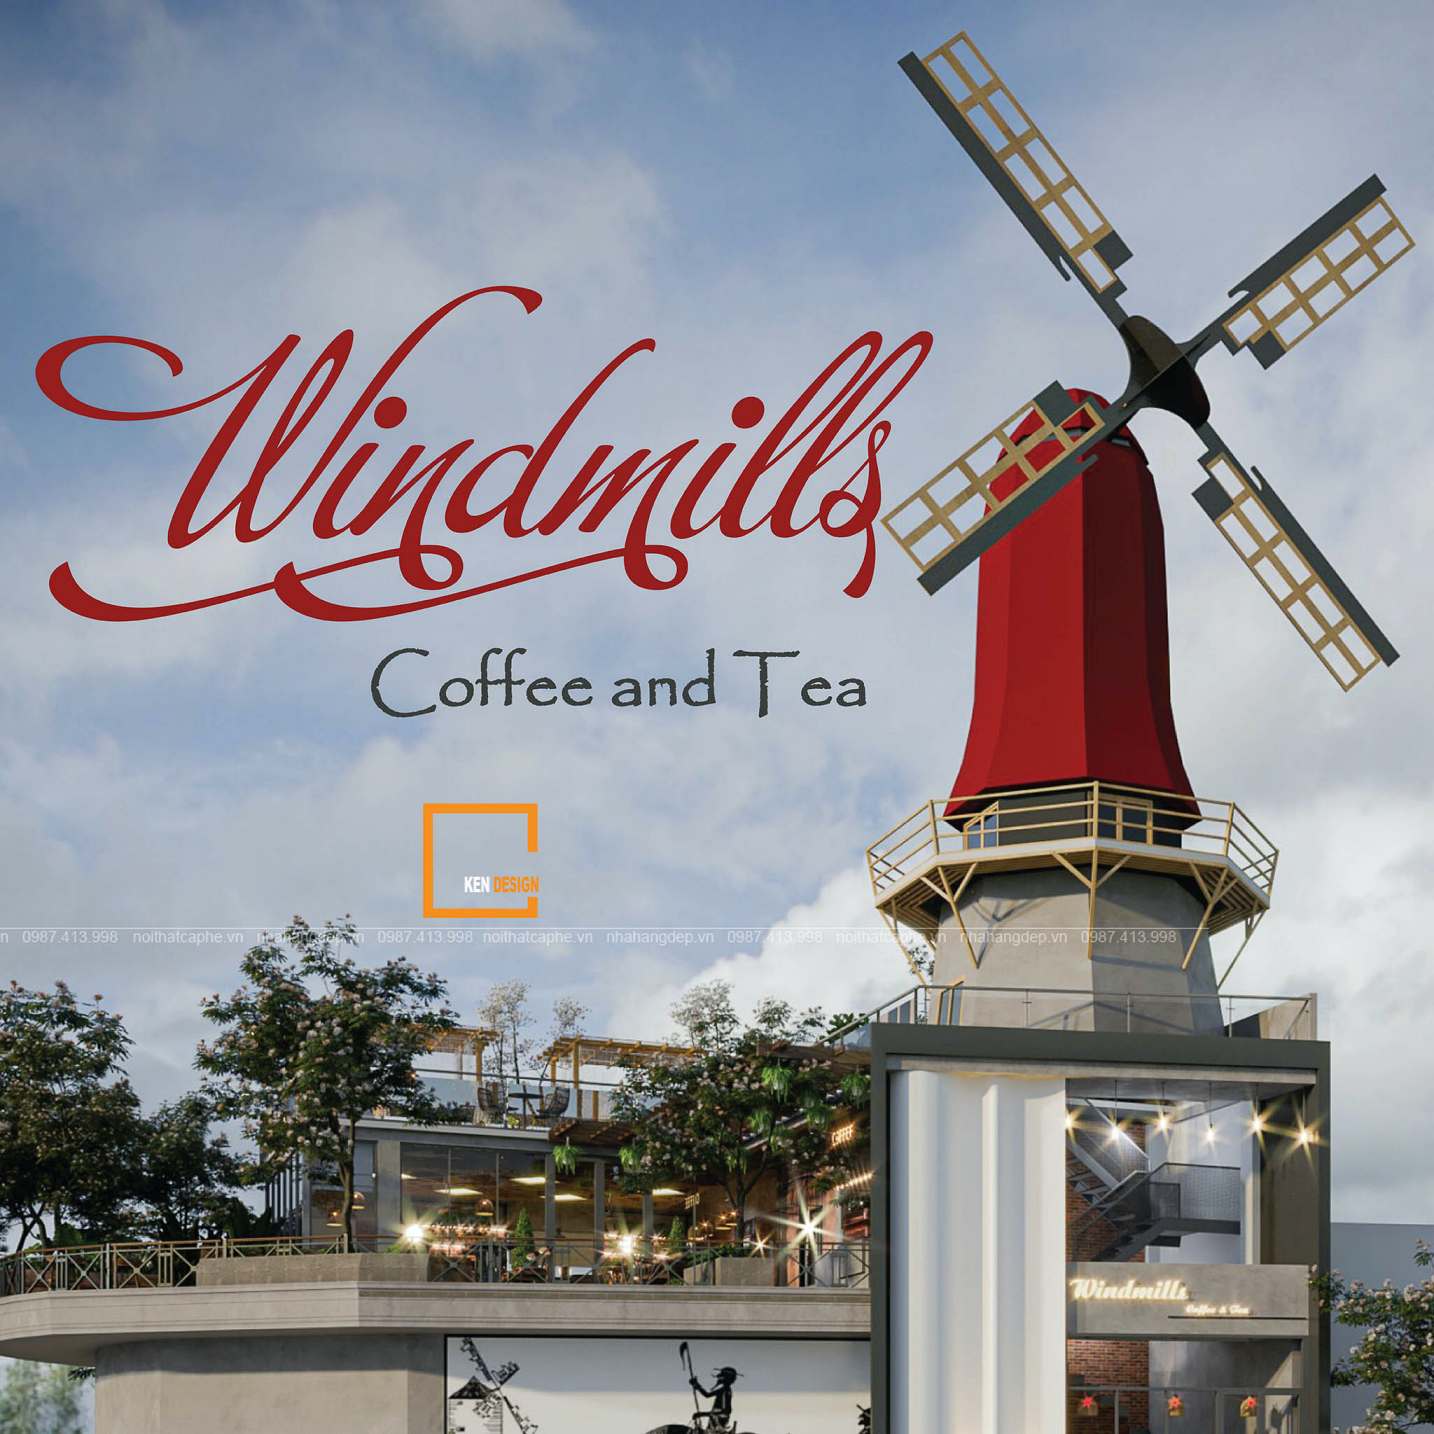 Thiết kế quán cafe Windmills Coffee and Tea – Cối xay gió lấp ló sau những “cục bông gòn”